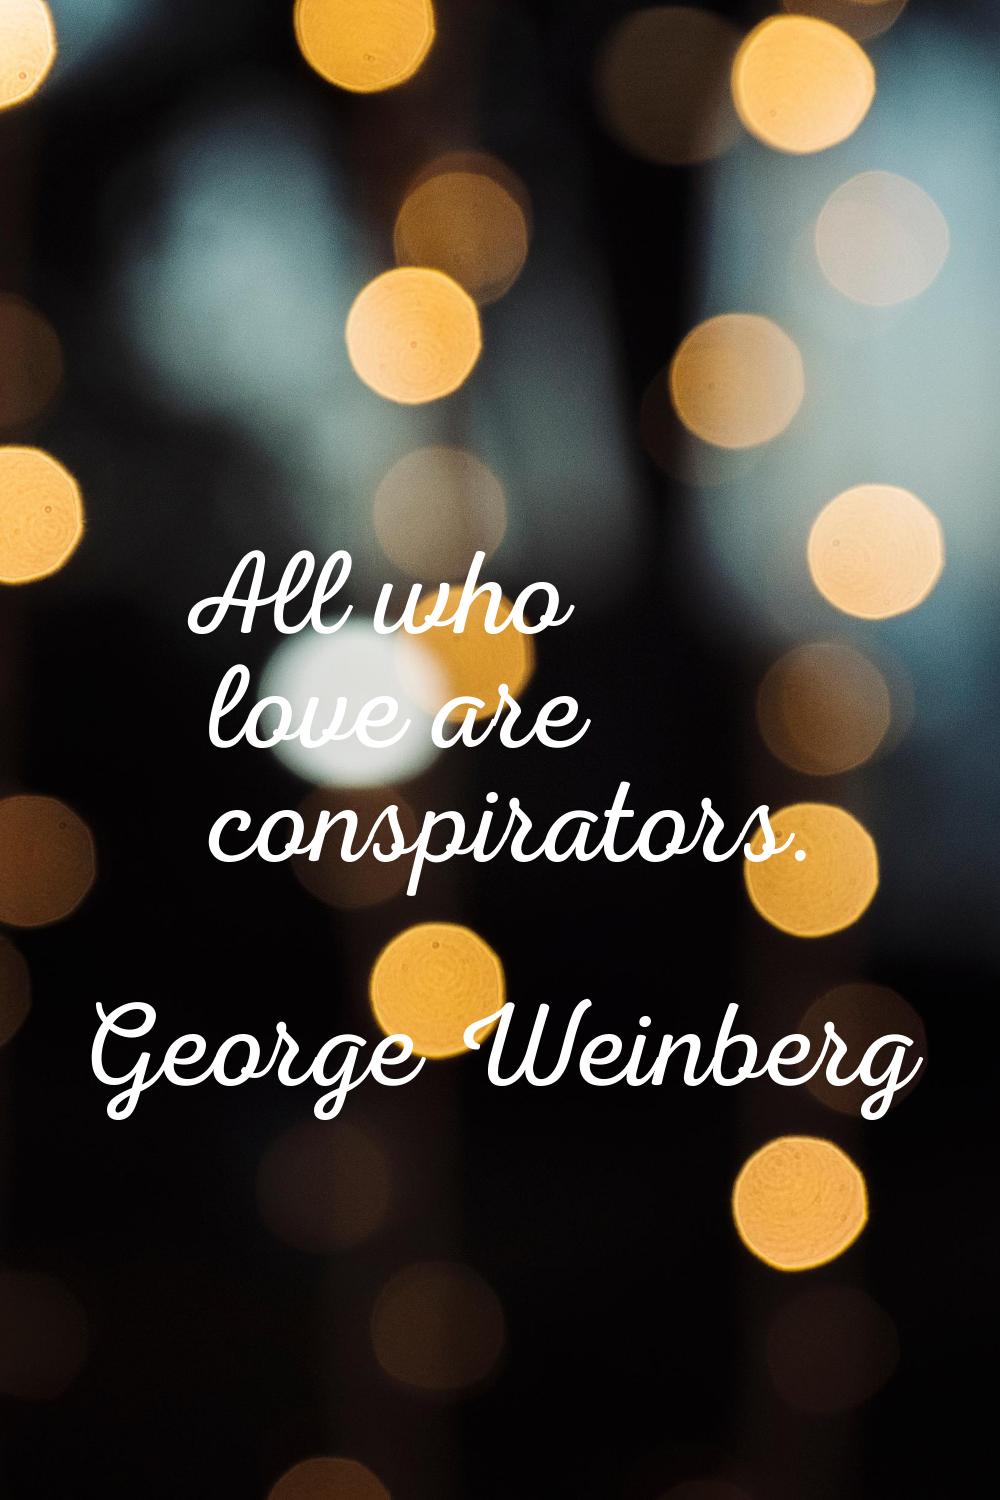 All who love are conspirators.